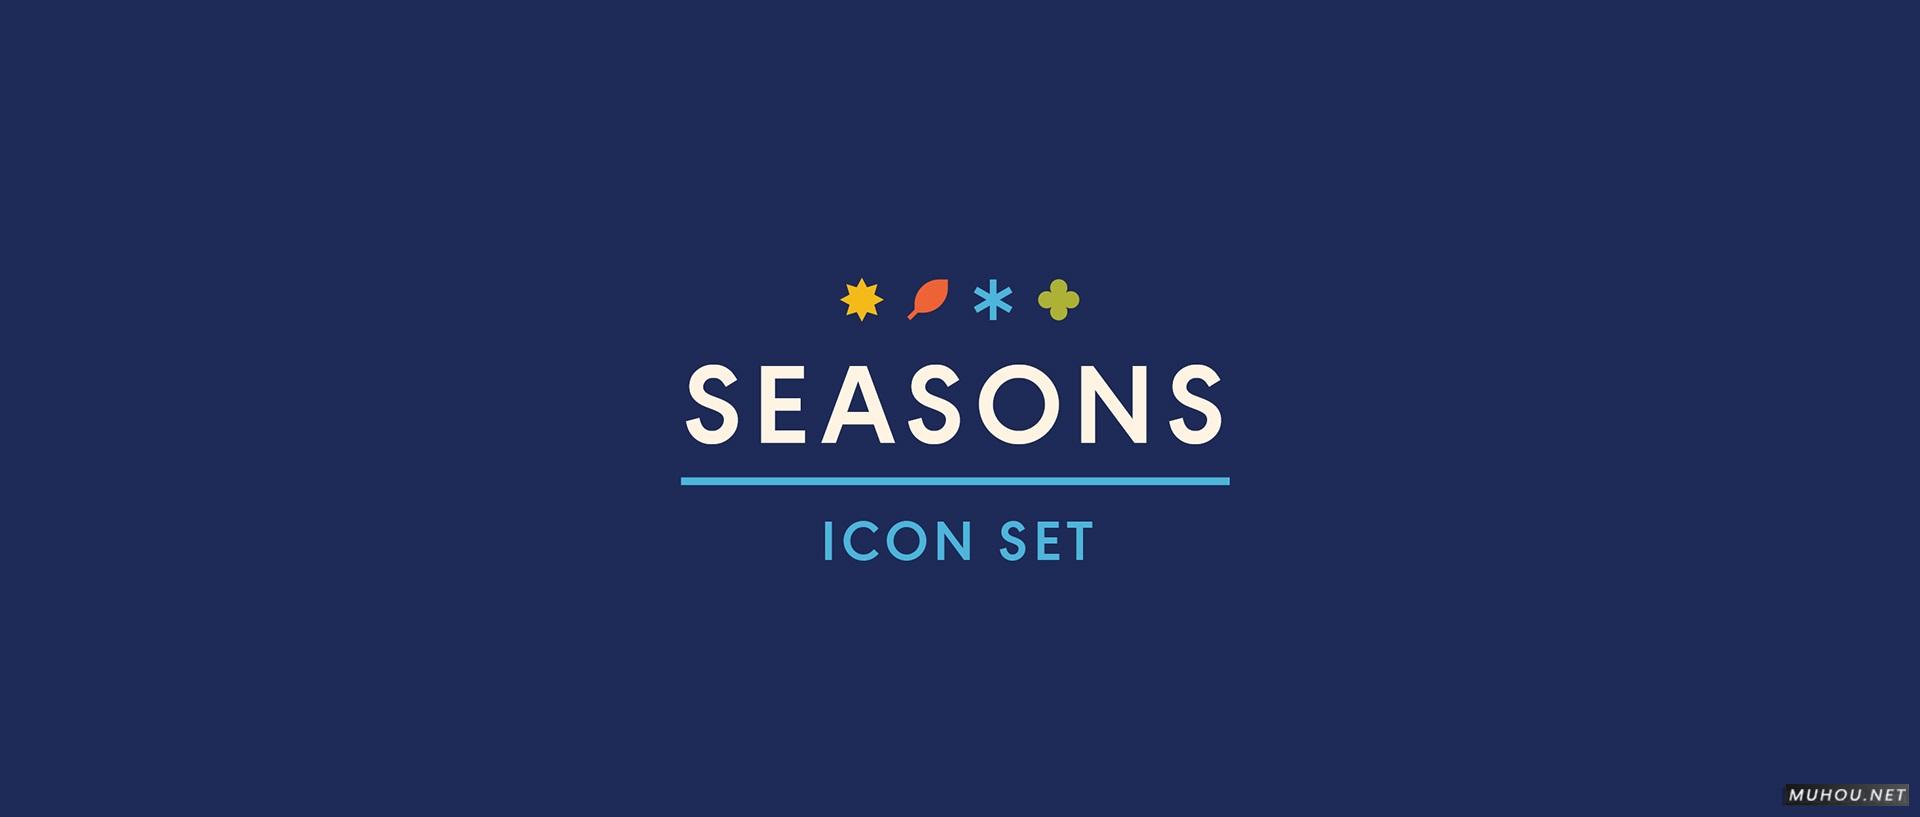 【标志设计】SEASONS季节图标设计 [17P]